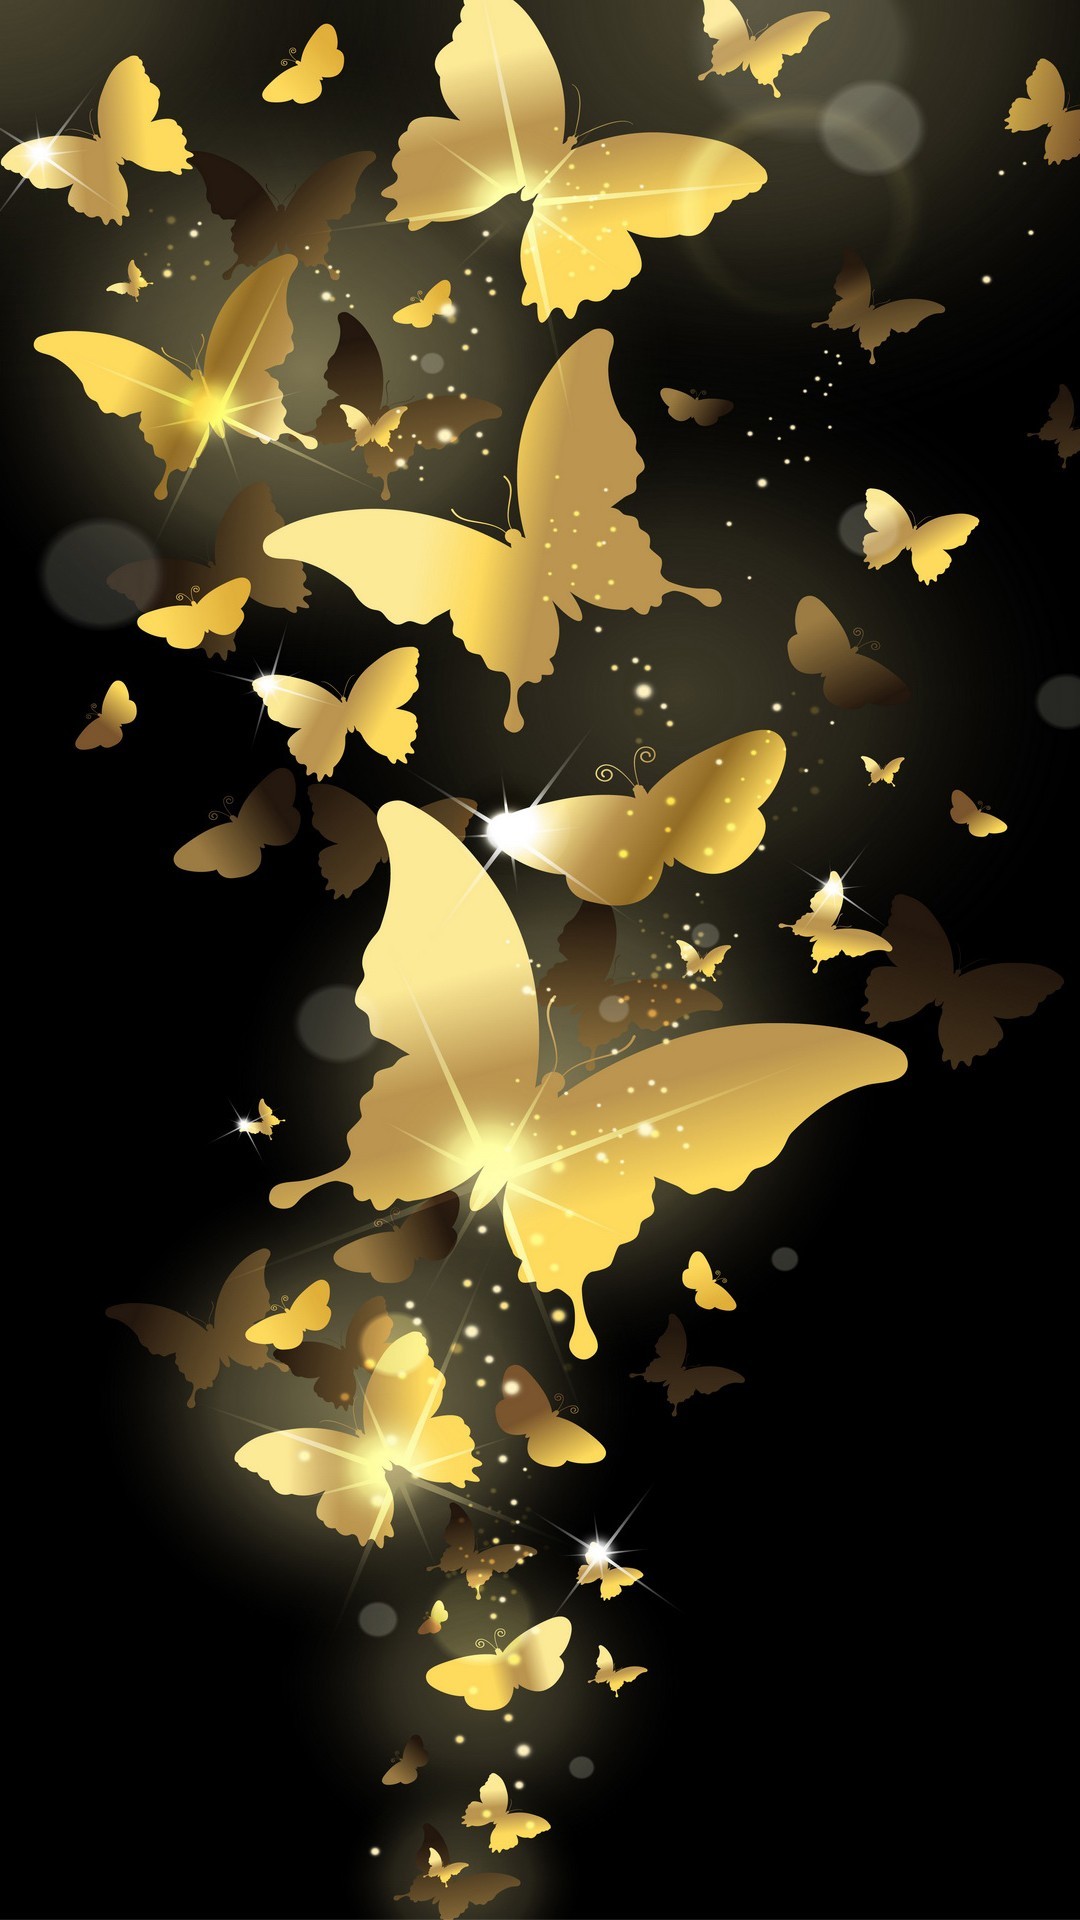 1080x1920 Flying Golden Butterflies Lockscreen iPhone 6 Plus HD Wallpaper | iPhone  Wallpaper